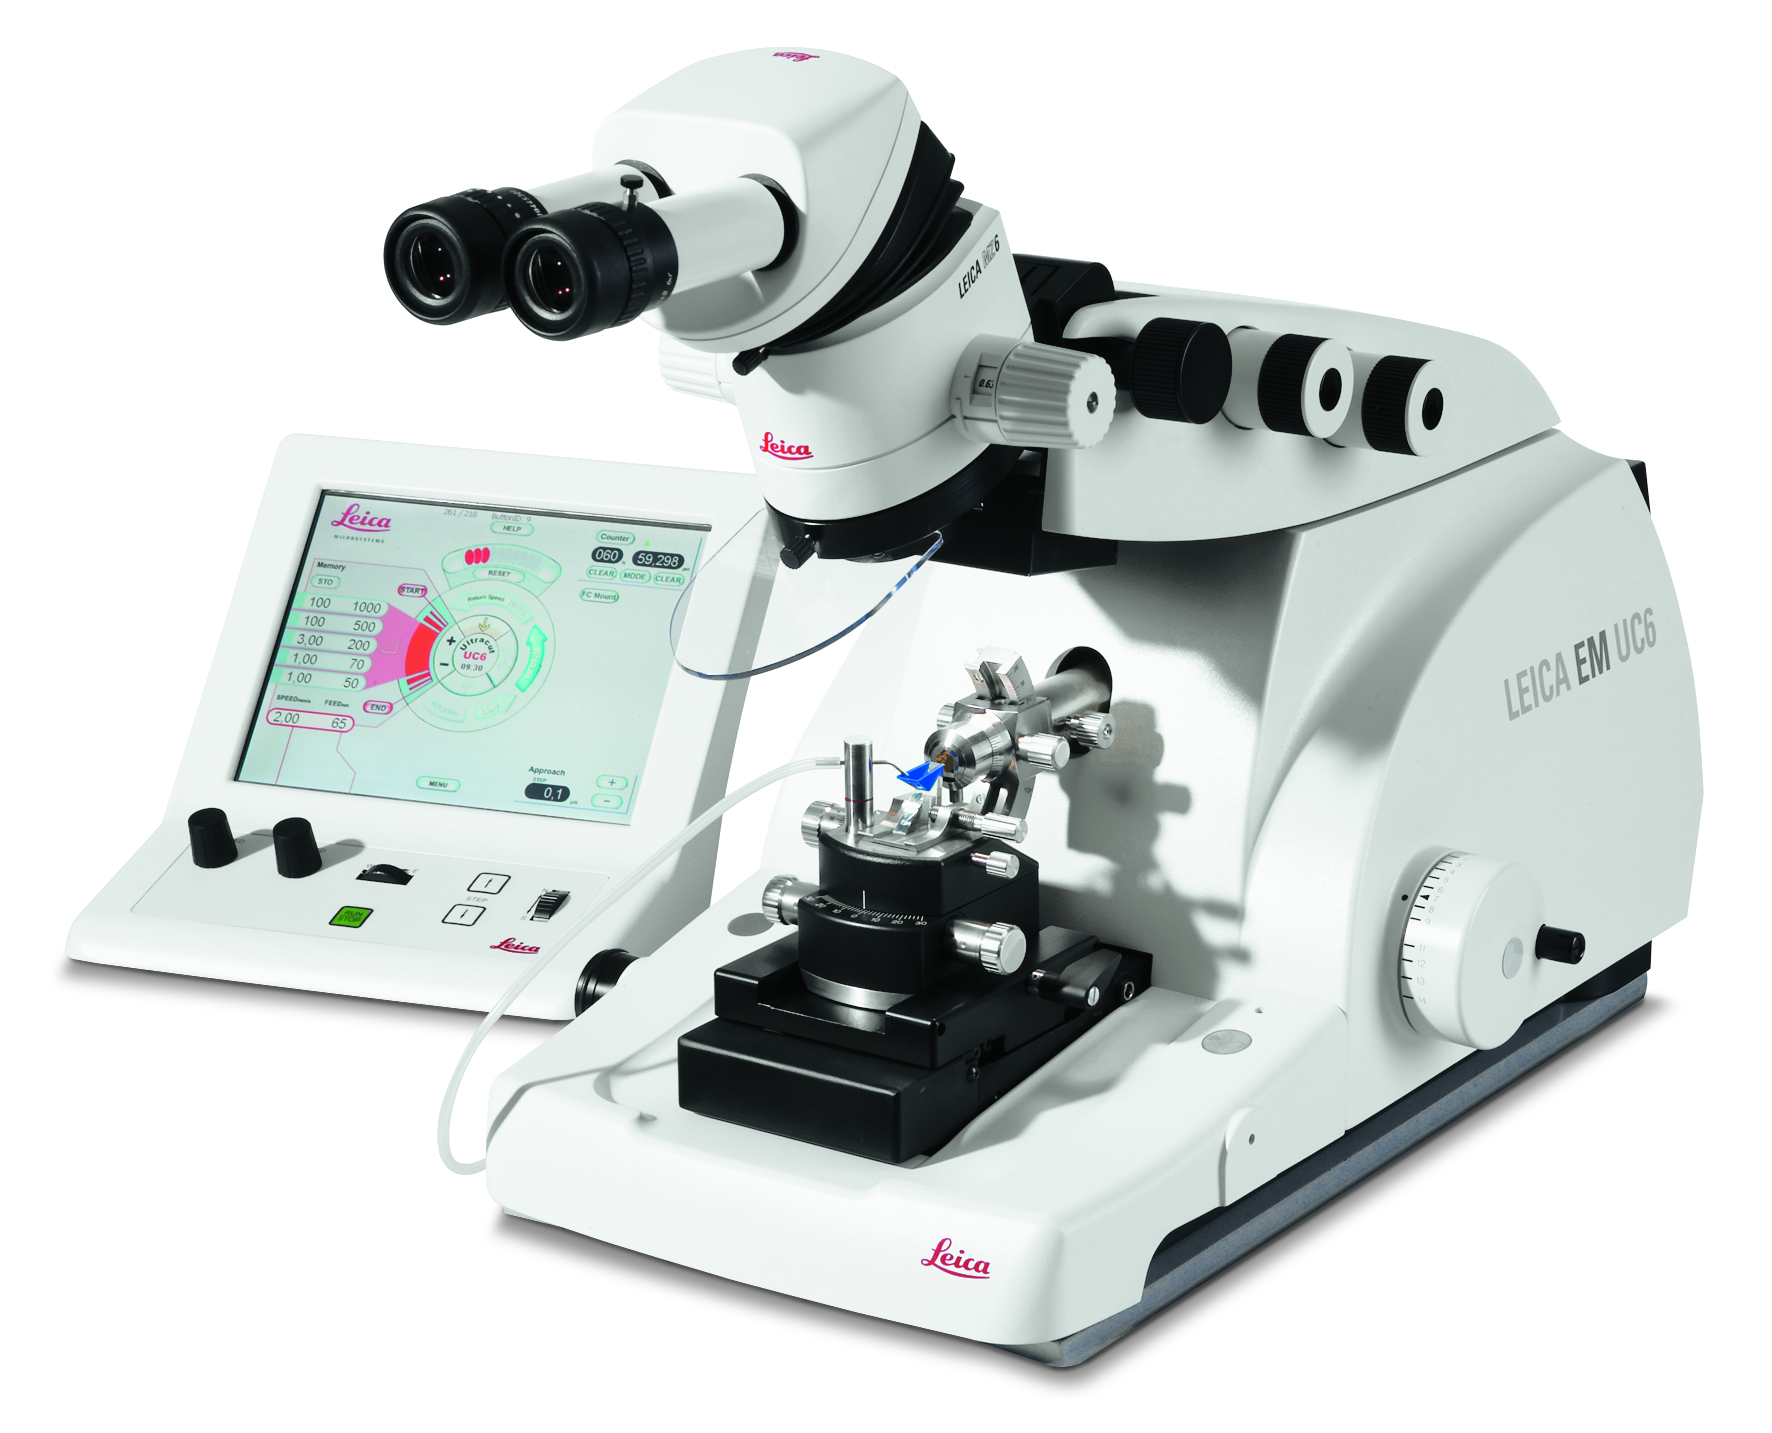 Ultramicrotomo Leica EM UC6 para corte ultrafino de muestras biológicas e industriales